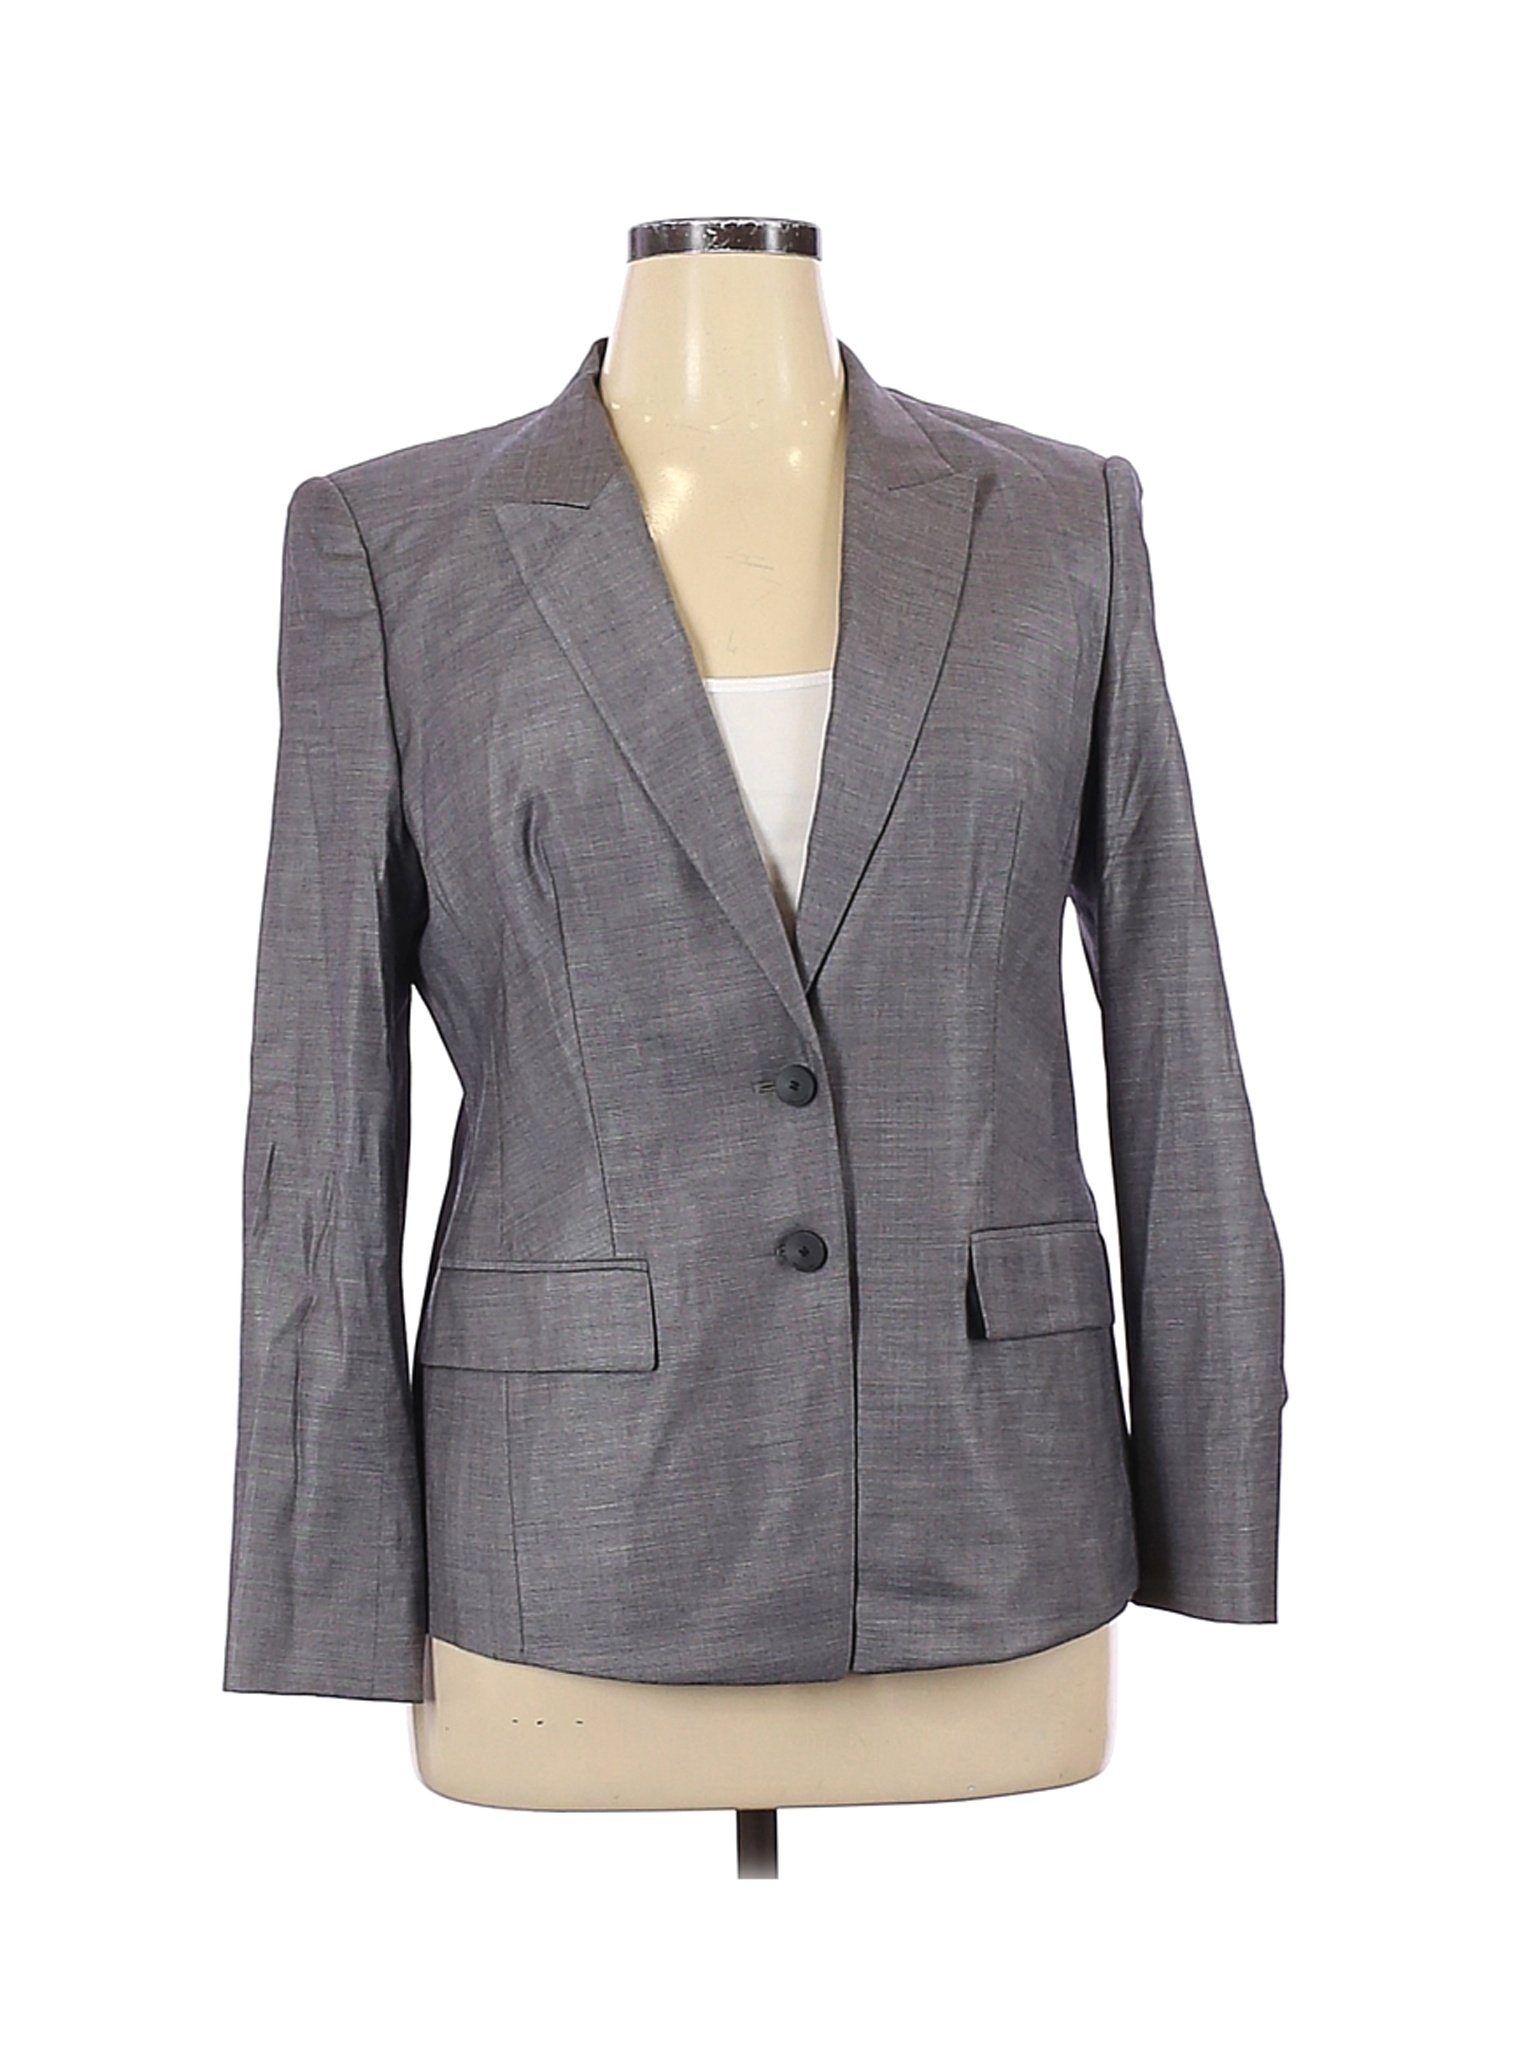 BOSS by HUGO BOSS Women Gray Wool Blazer 12 | eBay